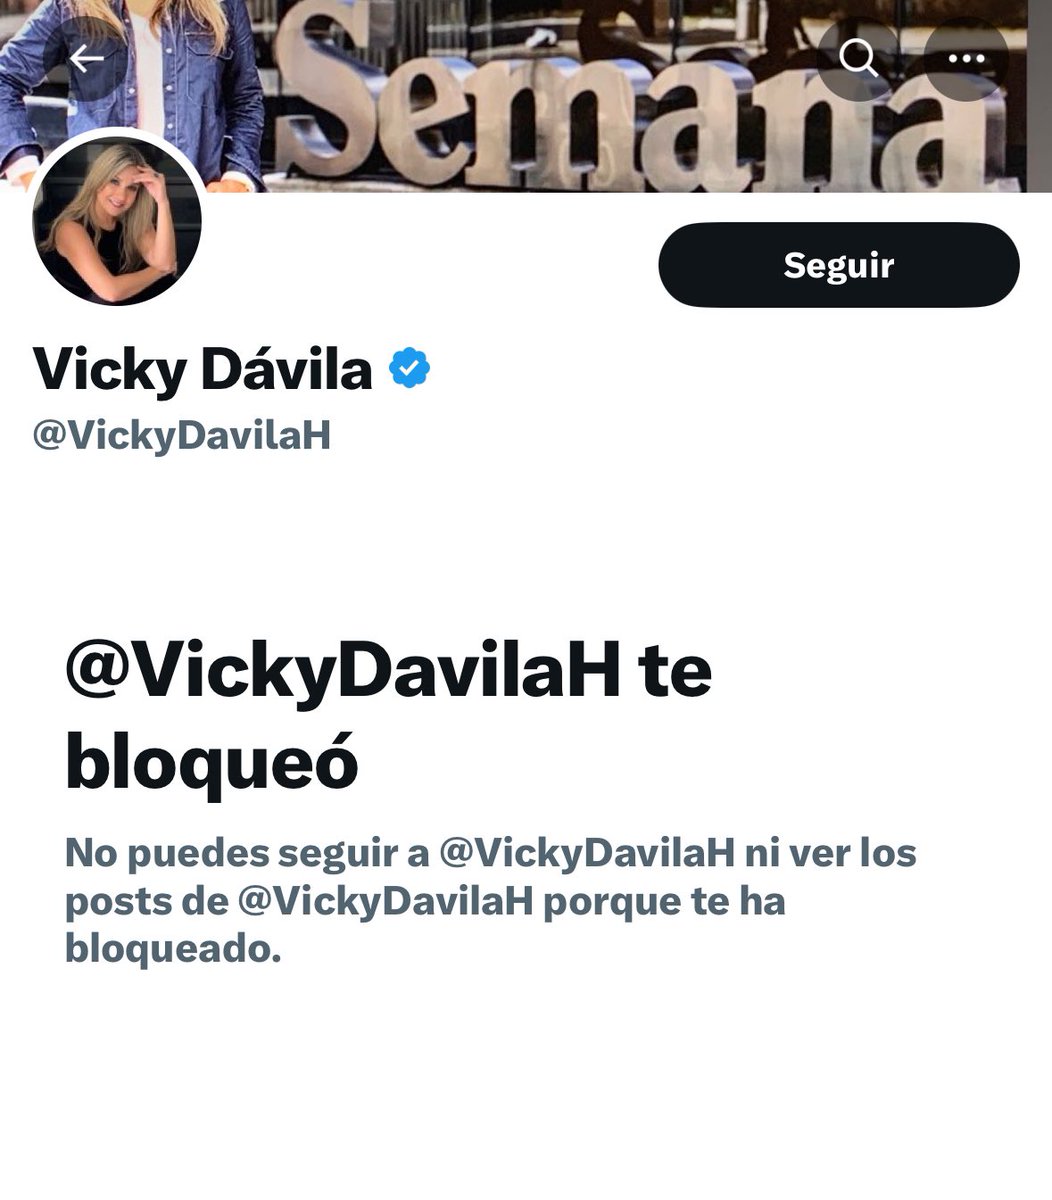 Hice estos apuntes a Vicky Dávila y me bloqueó 🤓